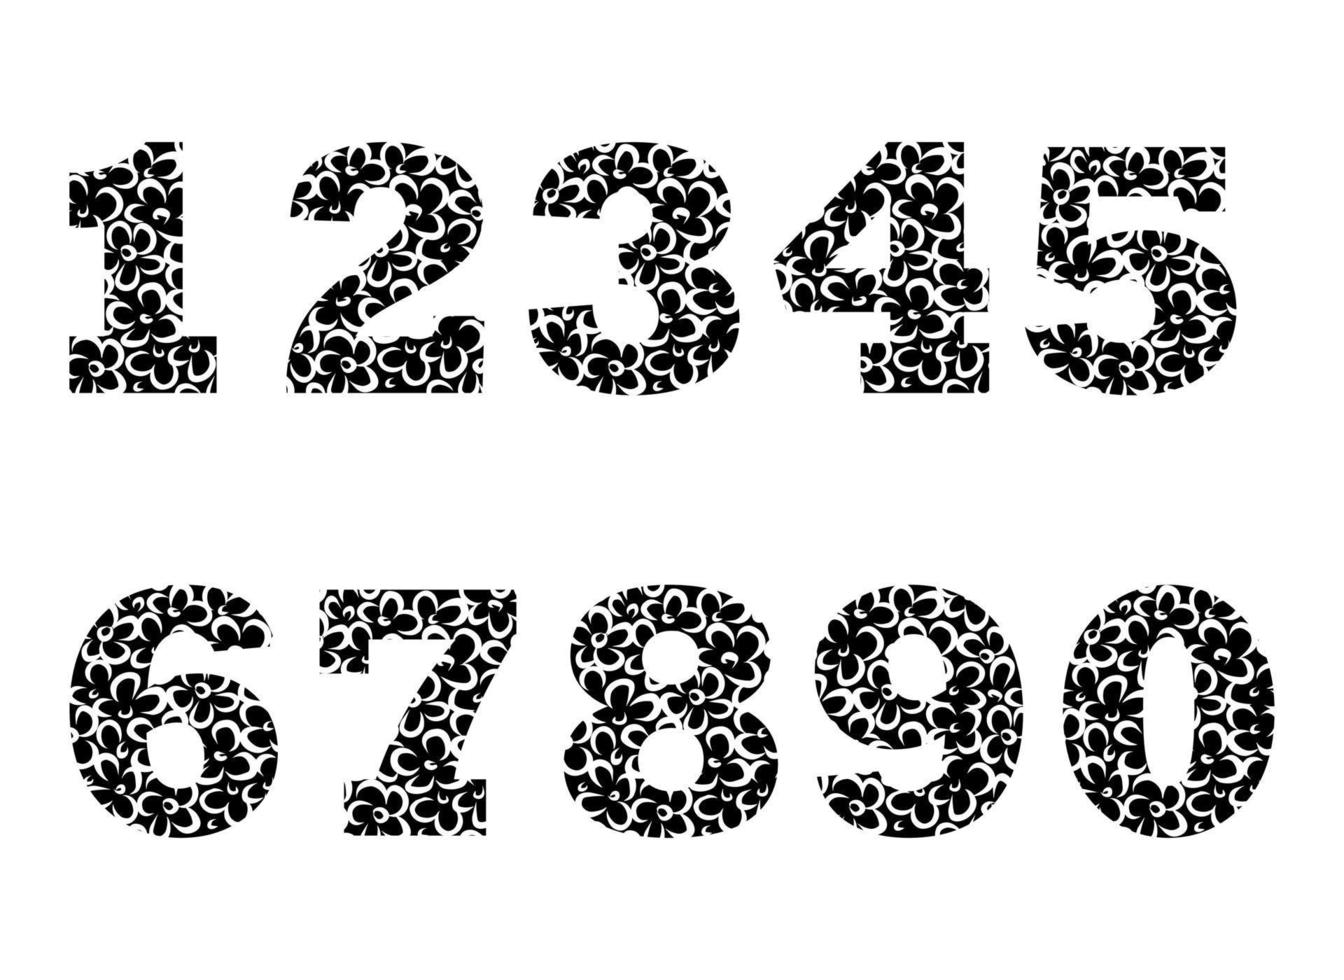 icône de vecteur isolé de jeu de nombres. forme de symbole graphique mathématique, impression de motif floral. dessin de croquis de griffonnage.